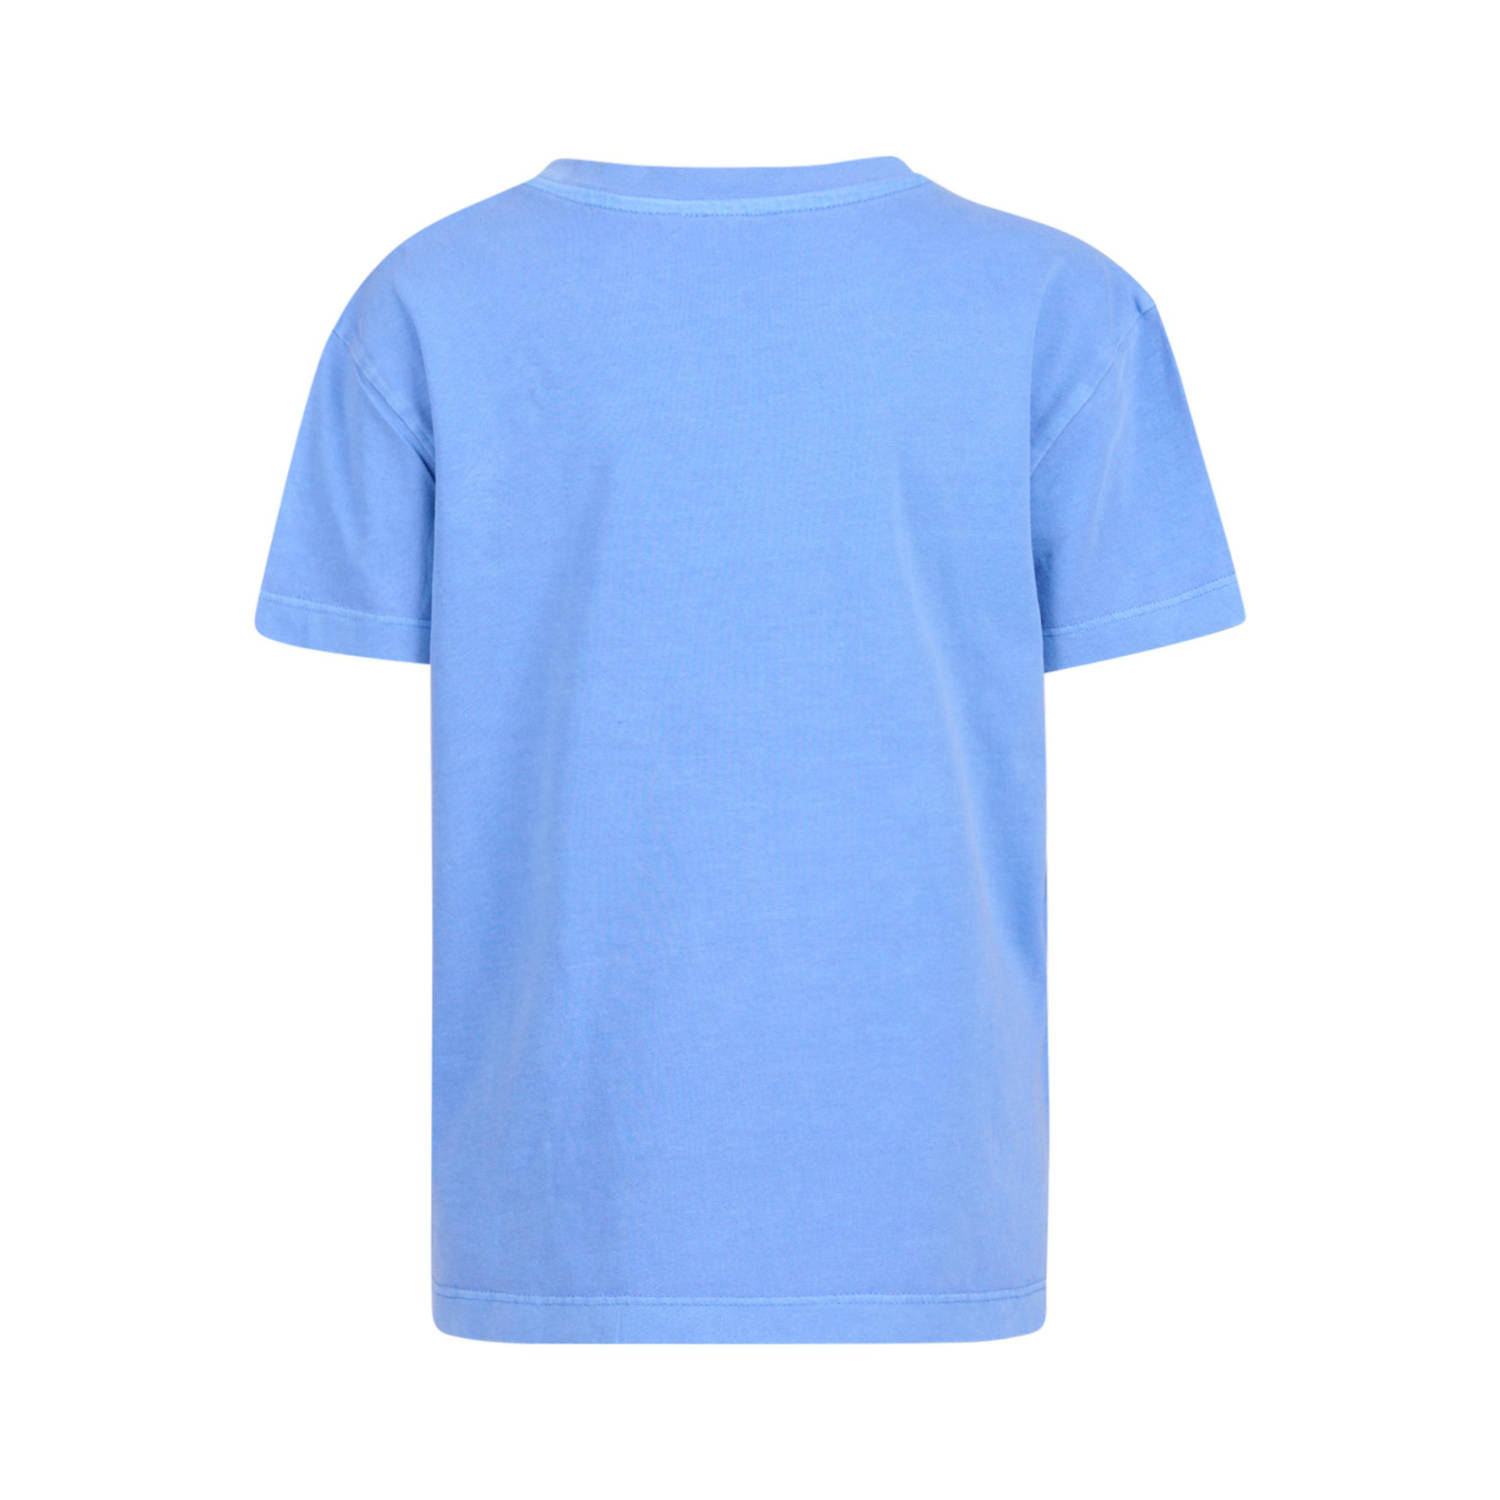 Shoeby T-shirt blauw